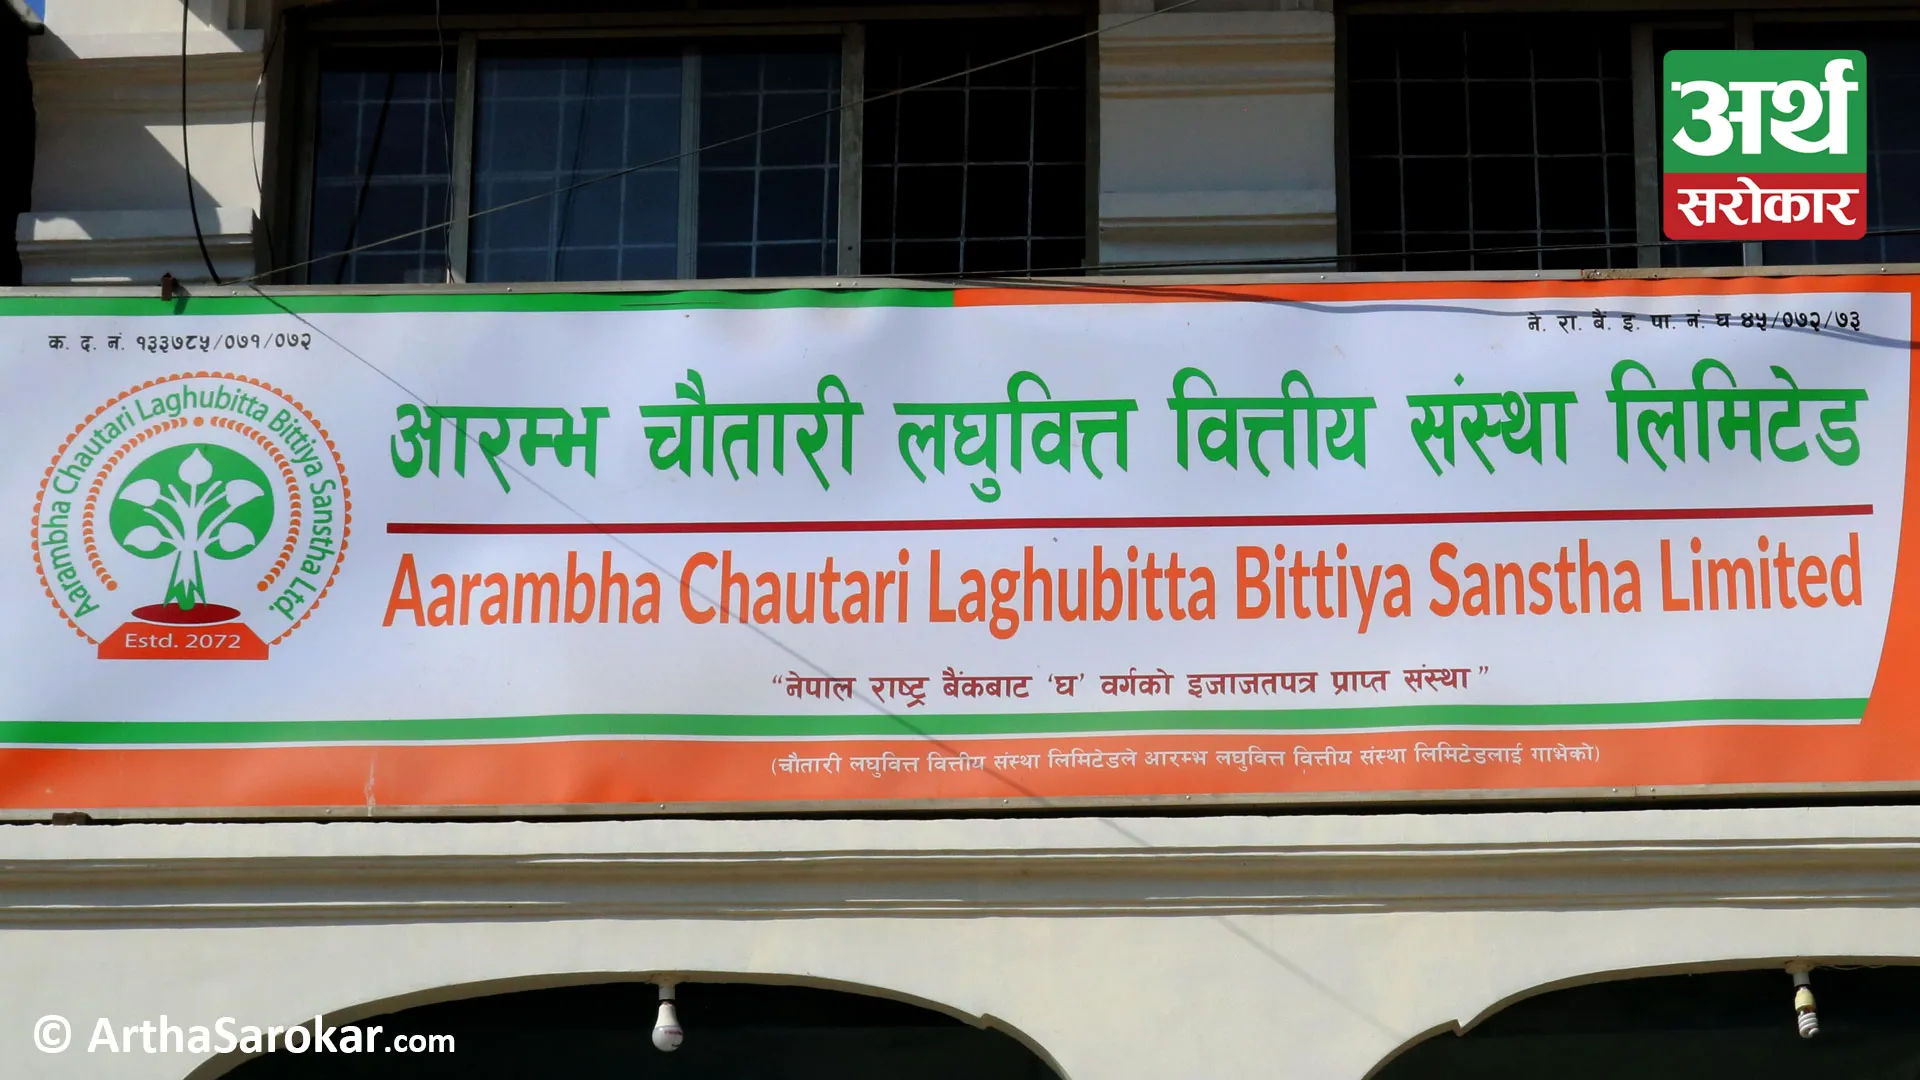 Profit of Aarambha Chautari Laghubitta decreased by 11 percent